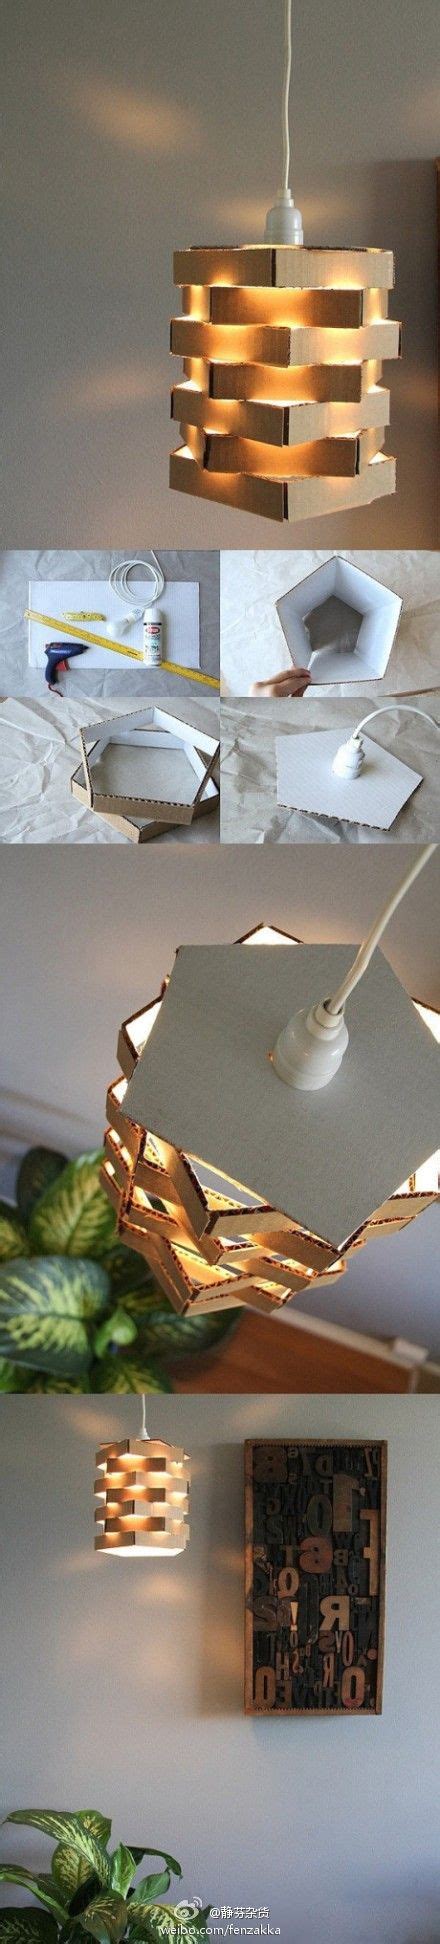 Diy Cool Cardboard Lamp Do It Yourself Fun Ideas